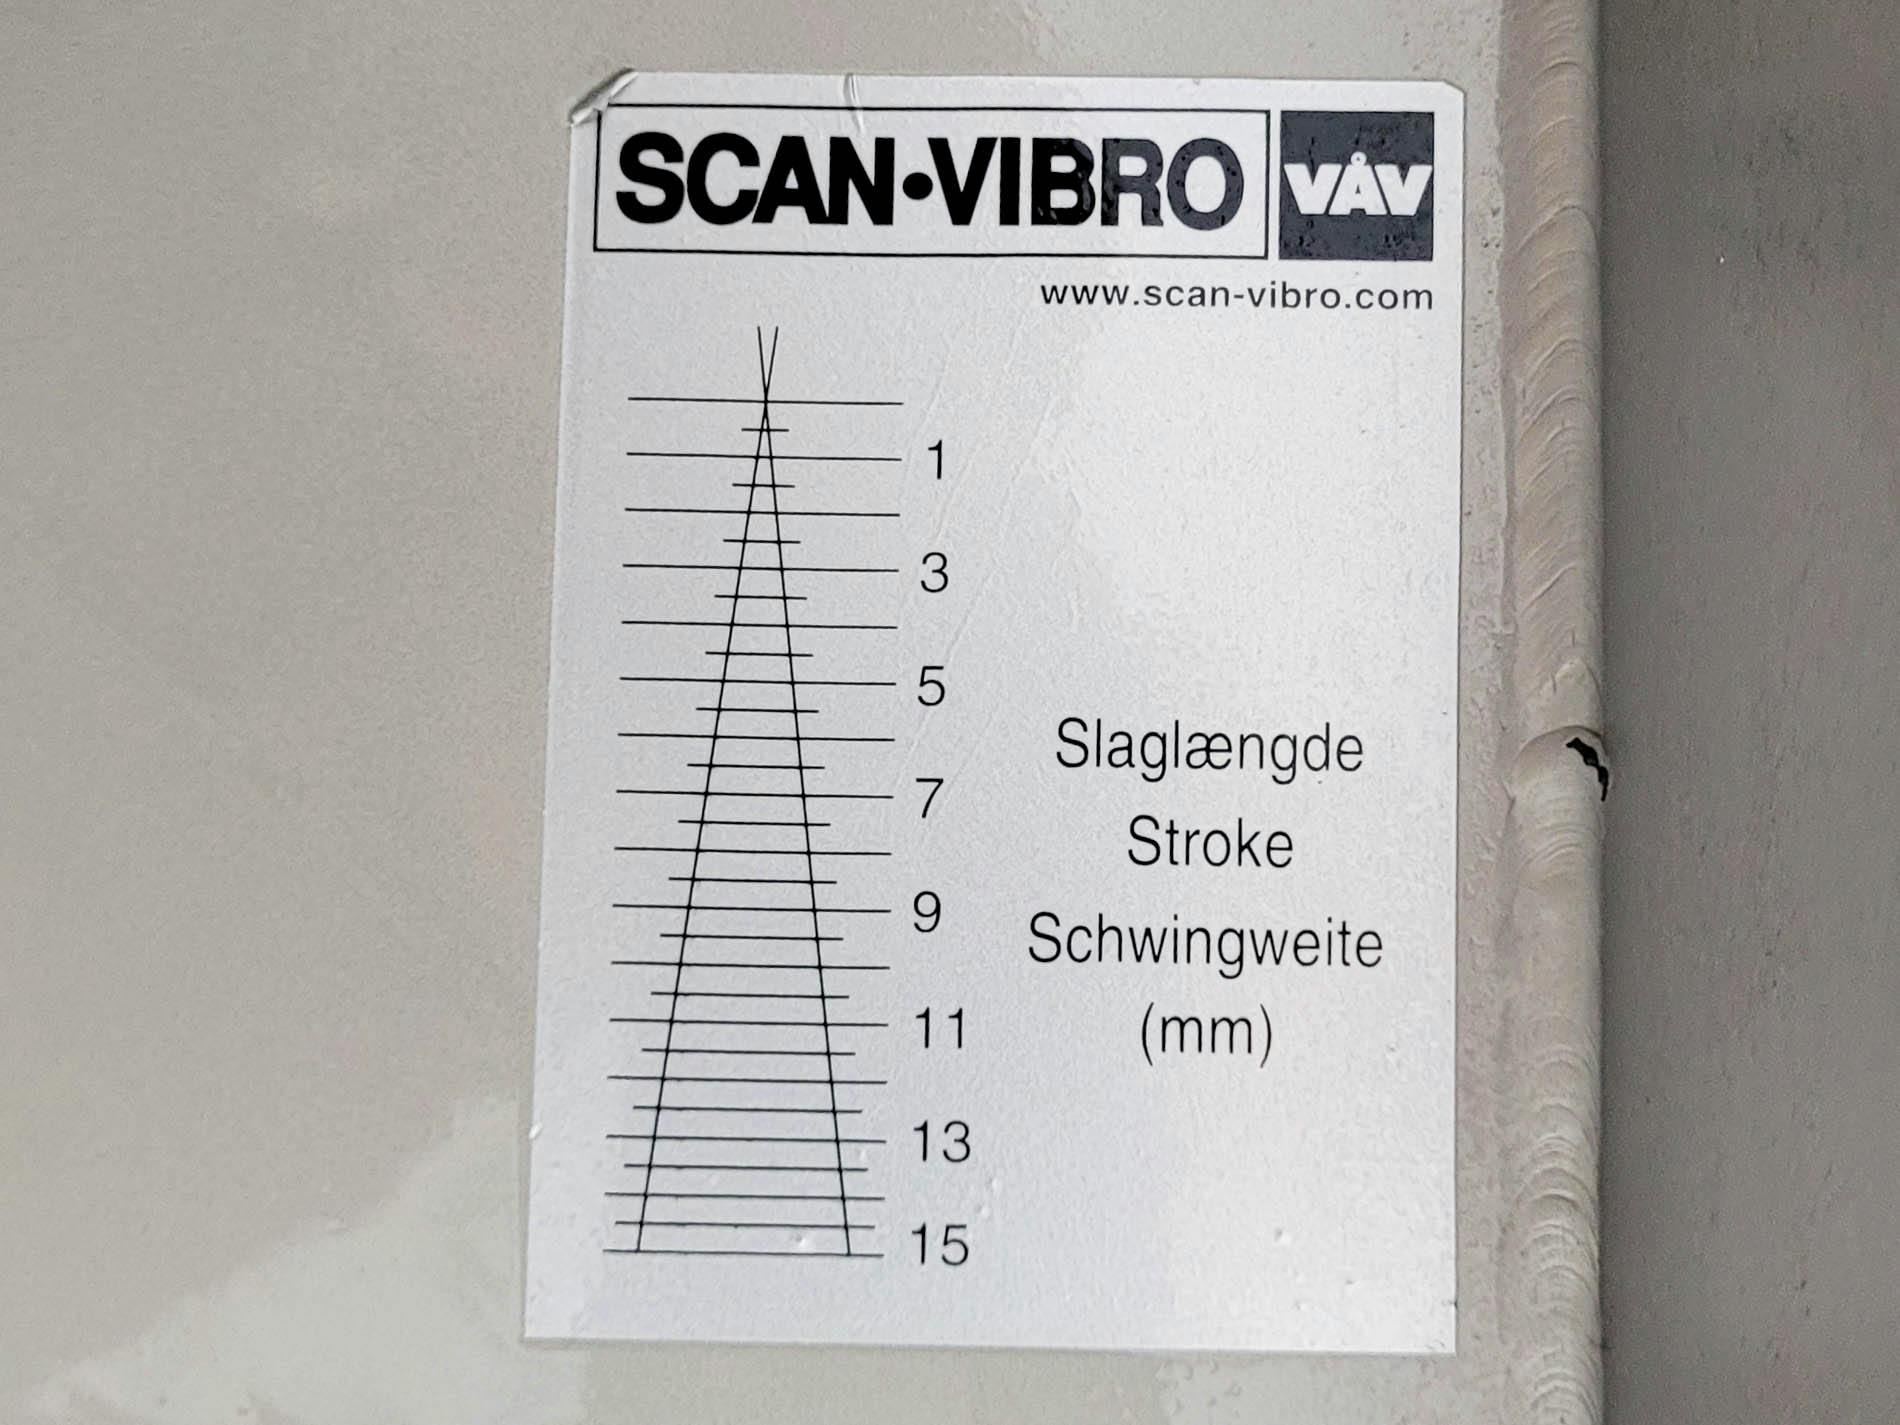 VAV Scan-Vibro TRS 300 x 1019 - Alimentador de vibrações - image 15